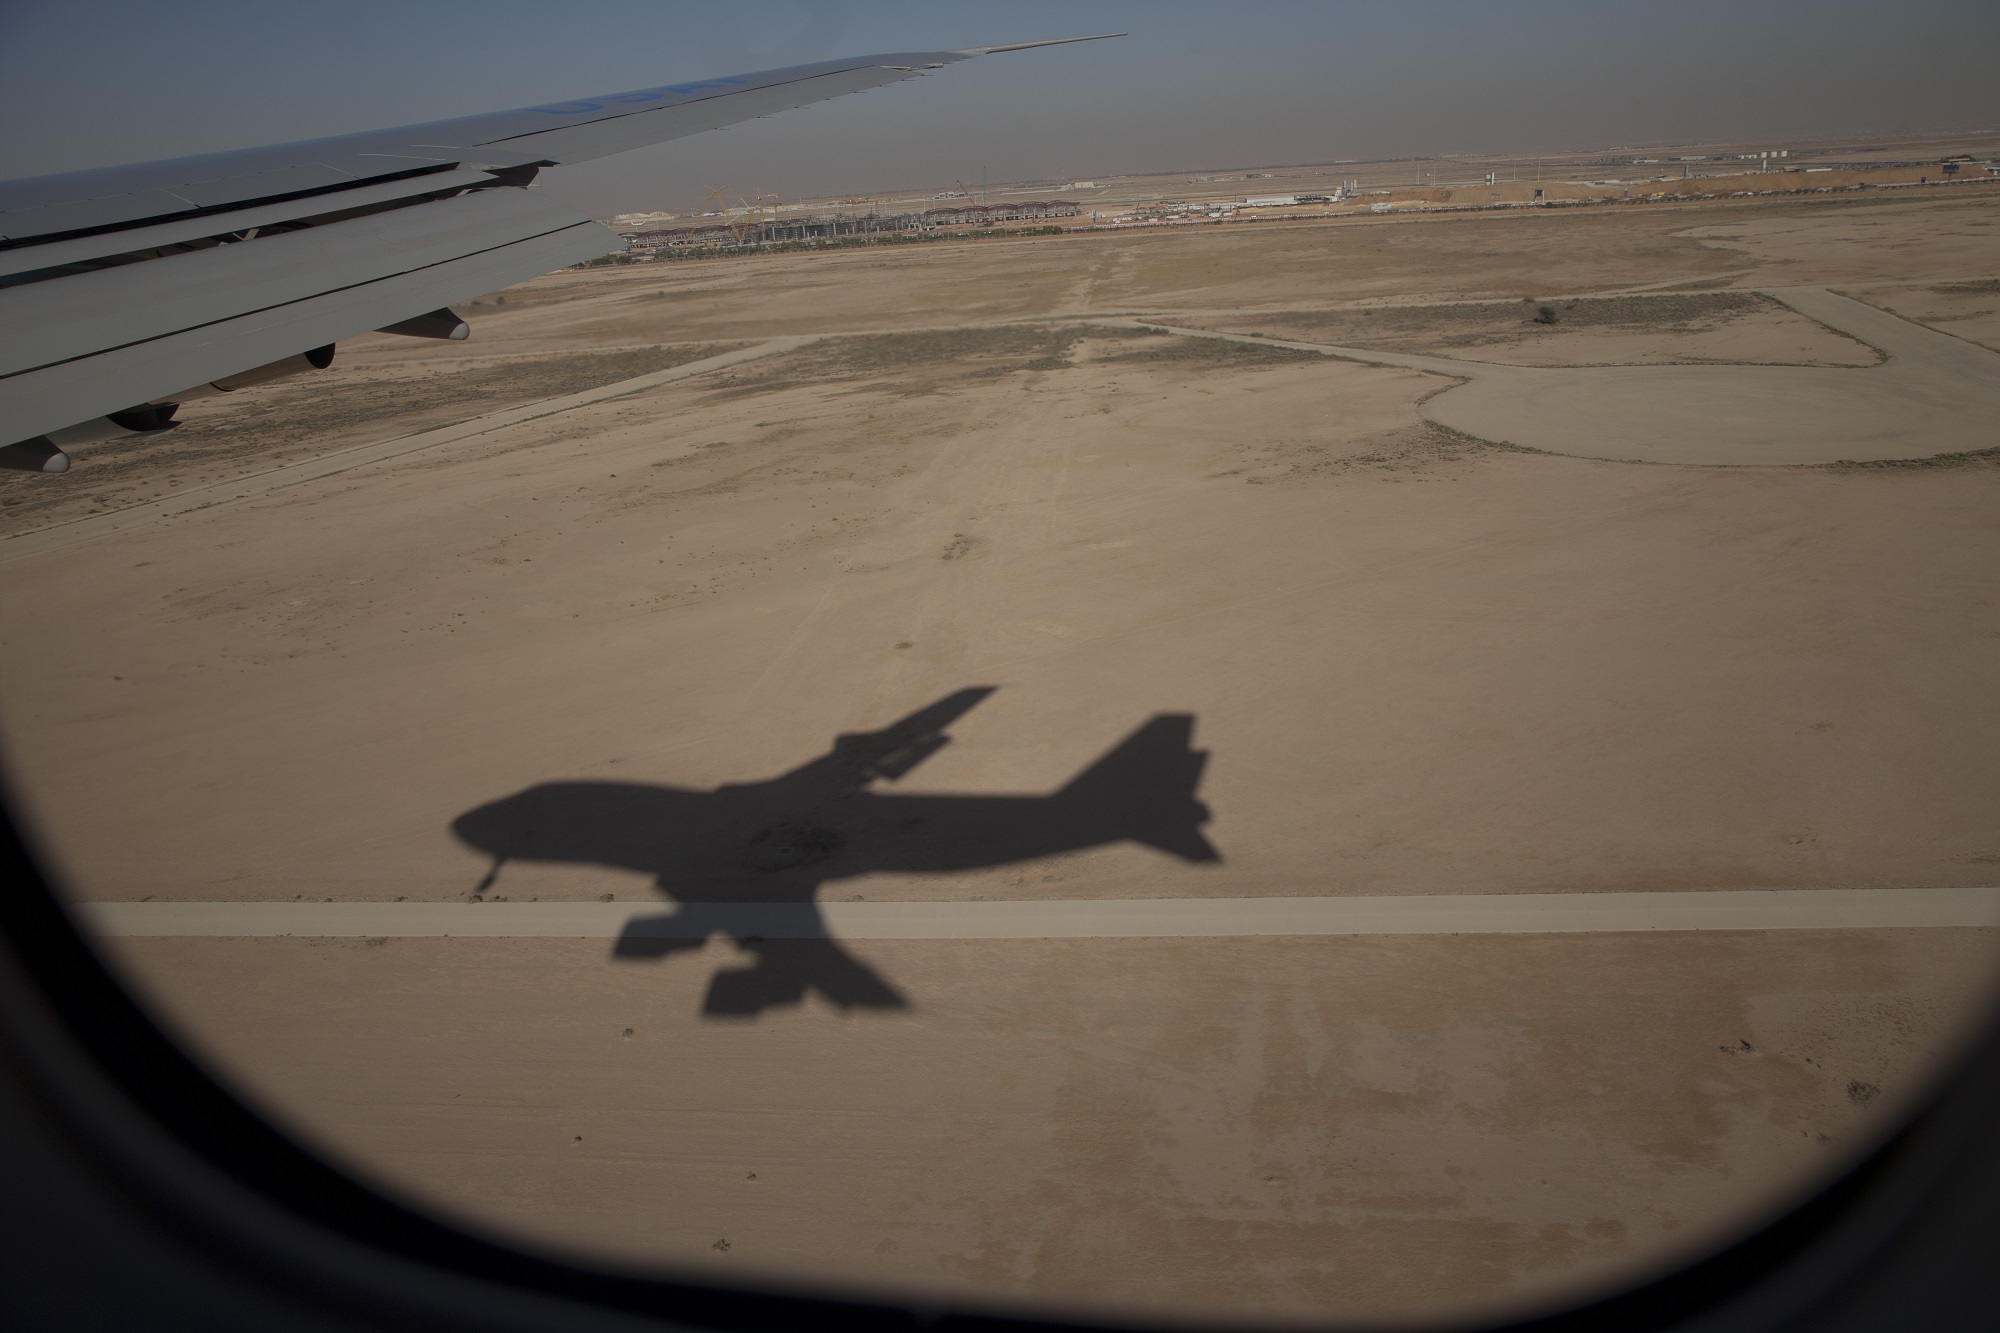 Σ. Αραβία: Σε διεθνή κόμβο μετατρέπεται το αεροδρόμιο του Ριάντ με 6 διαδρόμους αεροσκαφών για 120 εκατ. επιβάτες